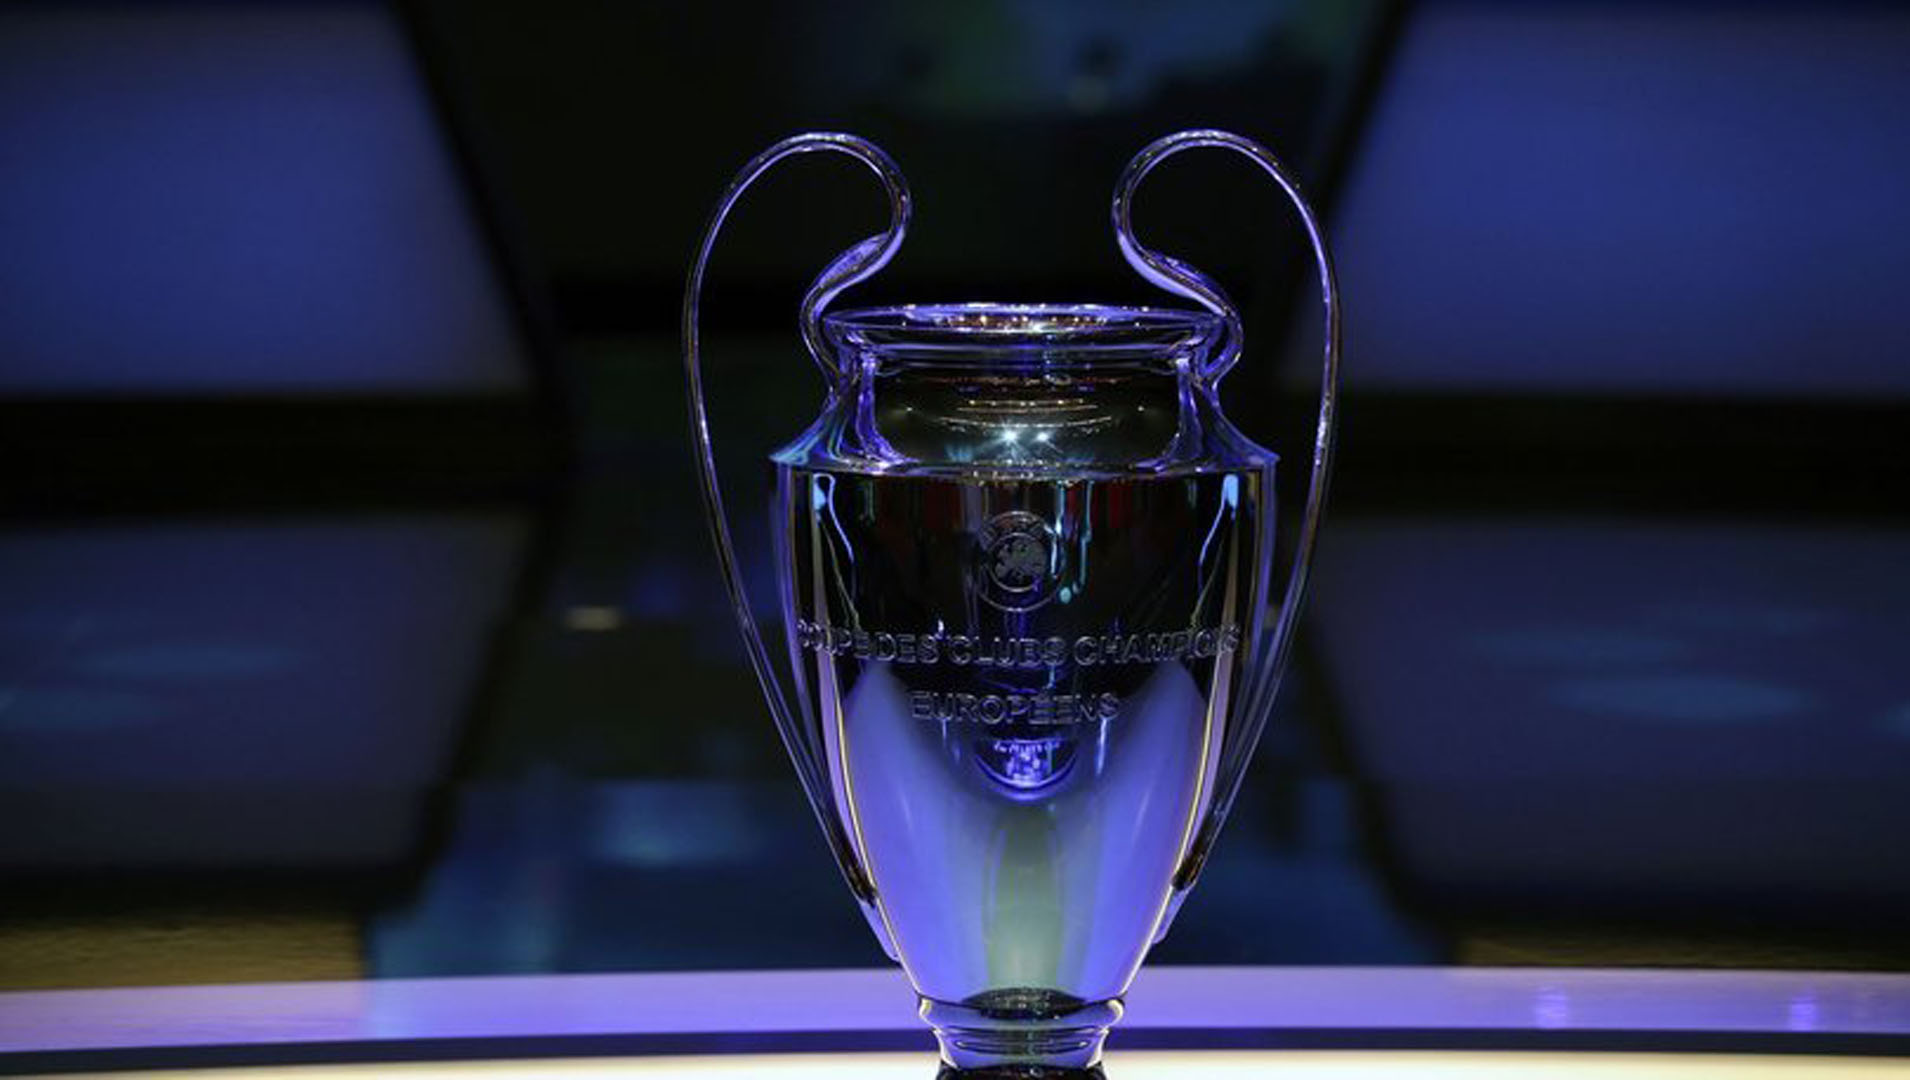 Süper Lig şampiyonu Şampiyonlar Ligi'ne direkt katılacak mı 2021-2022? Avrupa Ligi katılım koşulları neler, hangi takımlar katılacak?